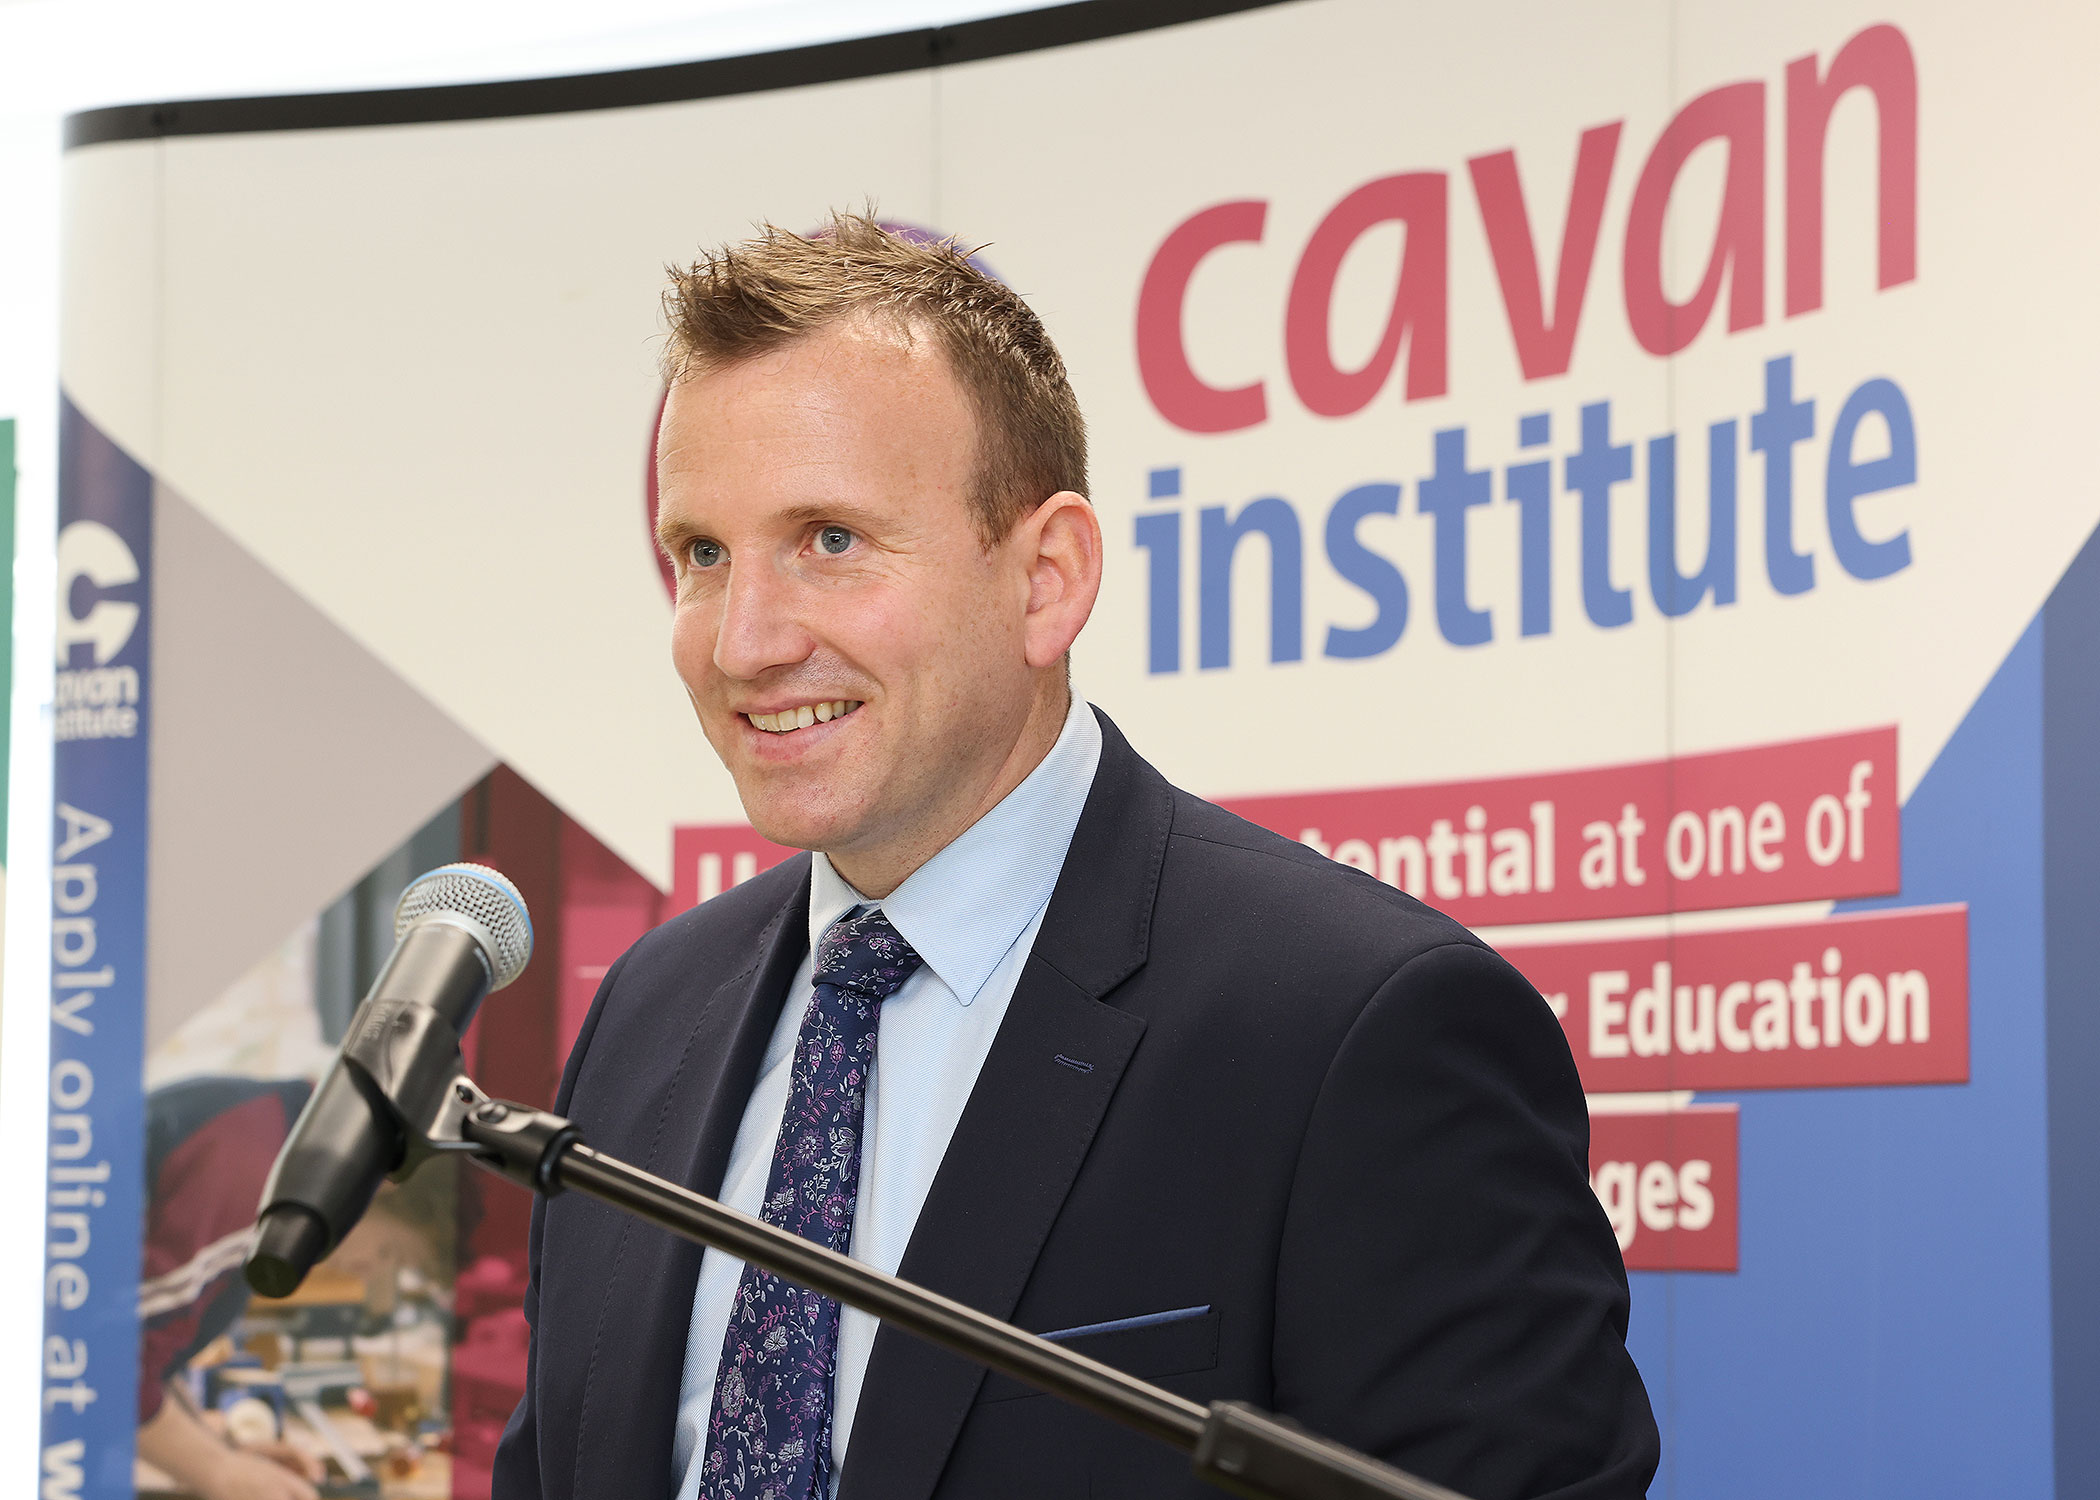 Minister Harris visit to Cavan